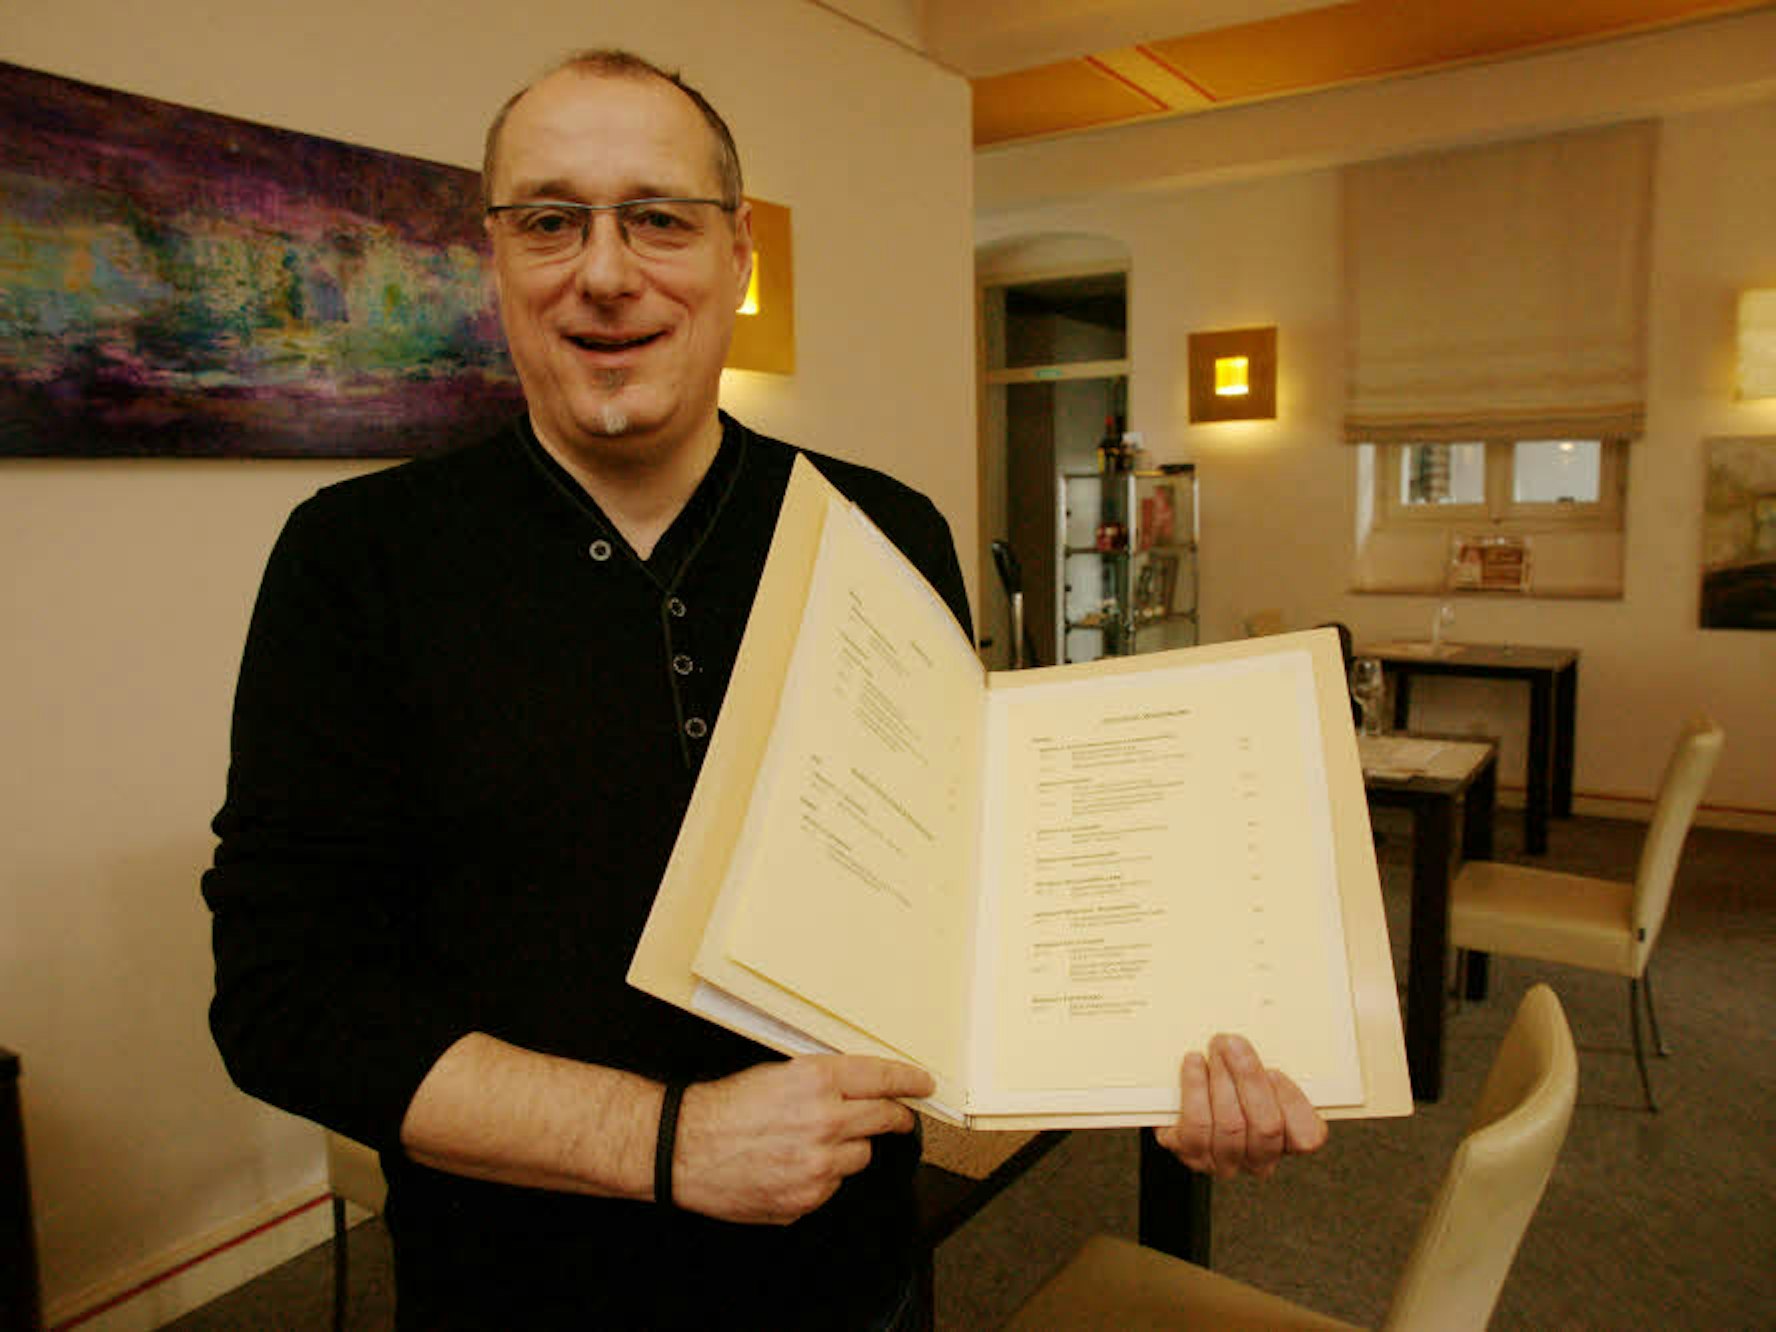 Eine Karte mit einer Liste erlesener Weine zeigt Küchenchef Herbert Brockel in seinem Restaurant, das bewusst jung, modern und puristisch eingerichtet ist.